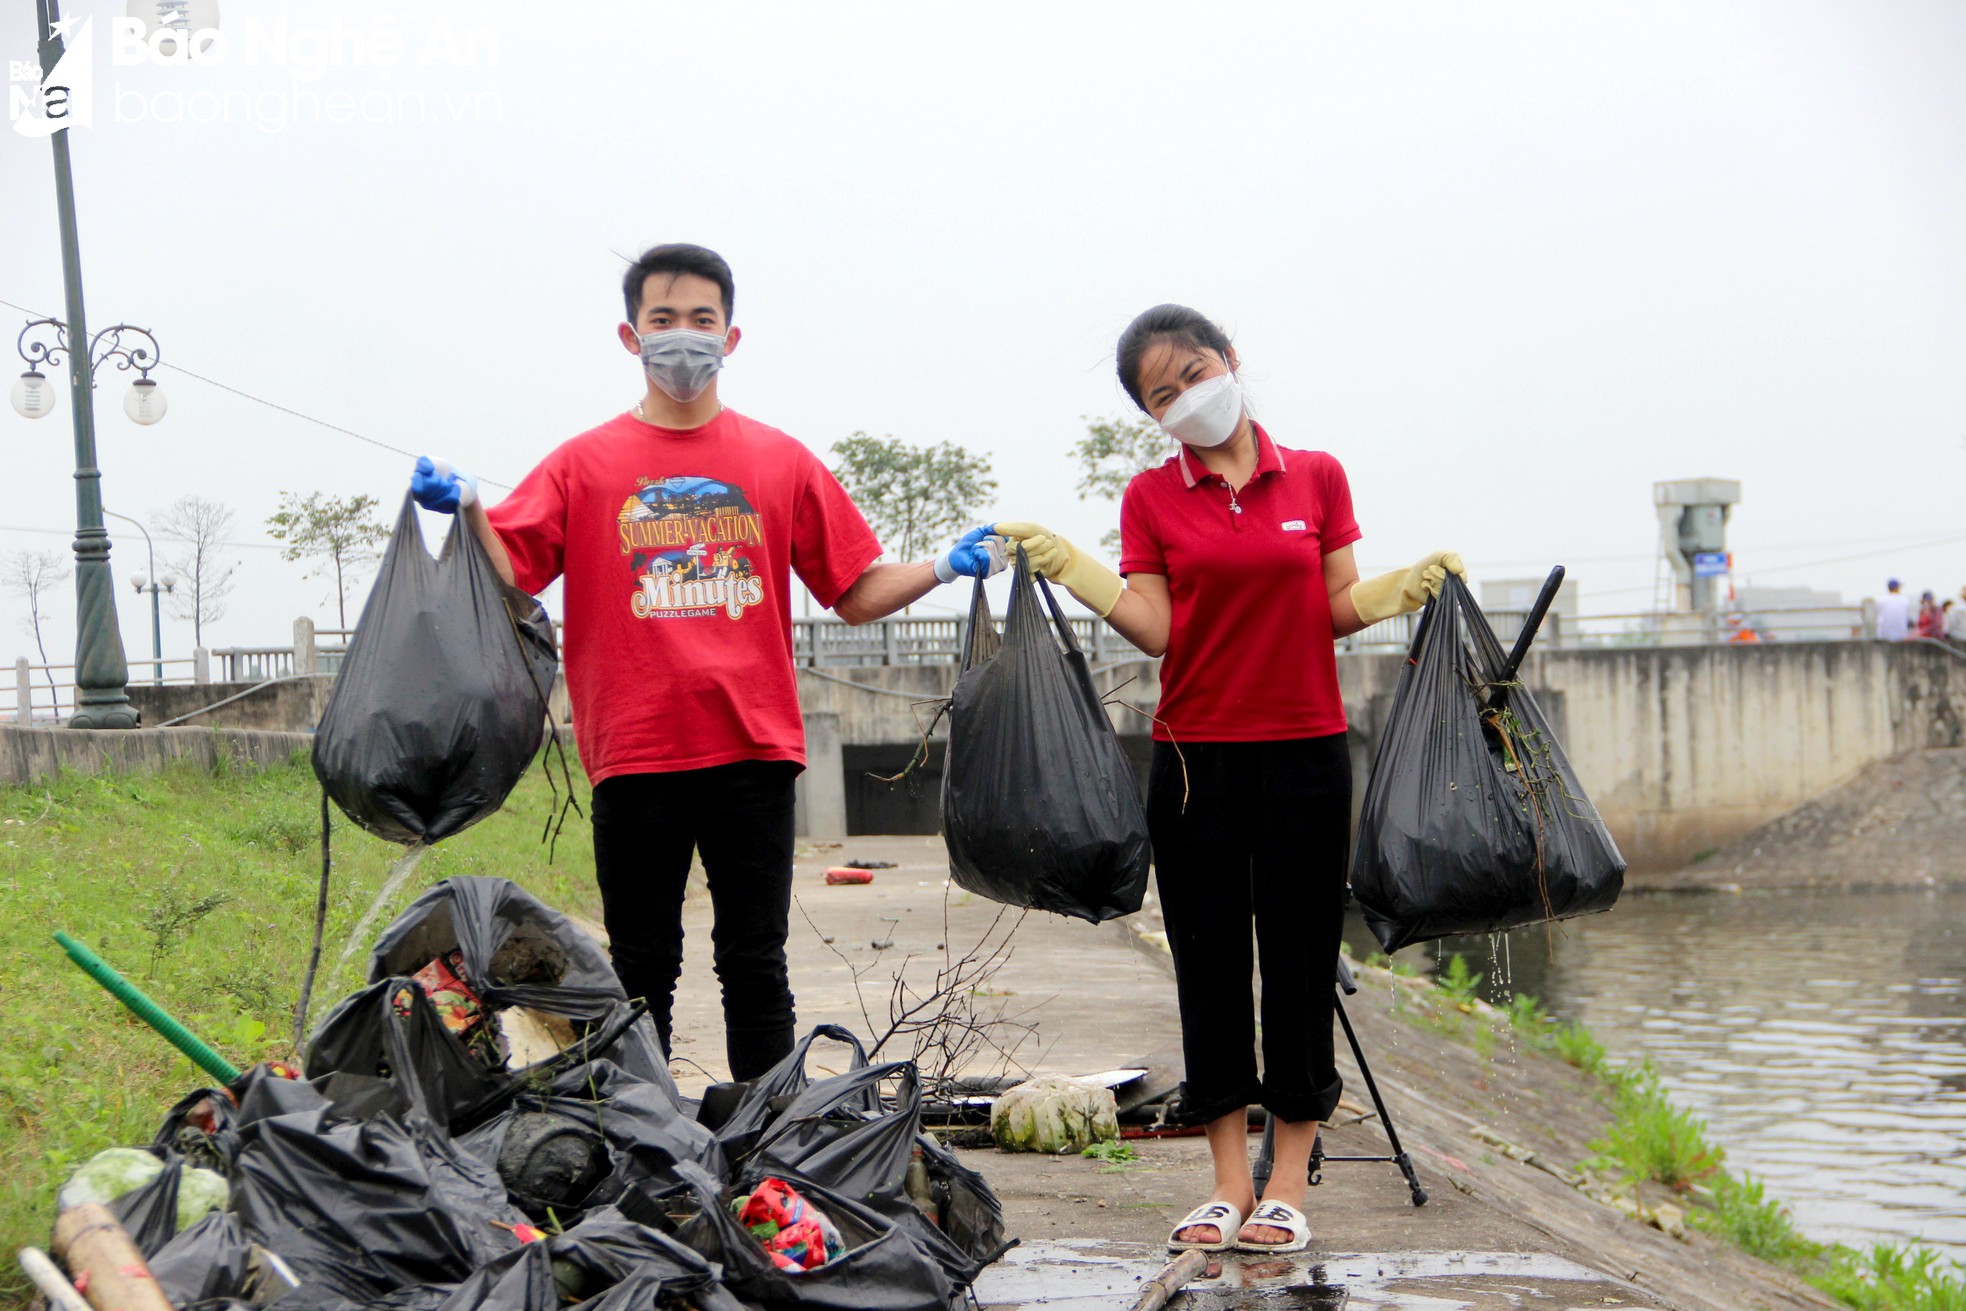 Nghệ An Xanh - Nhóm bạn trẻ gen Z tình nguyện dọn rác, làm sạch môi trường - Ảnh 9.